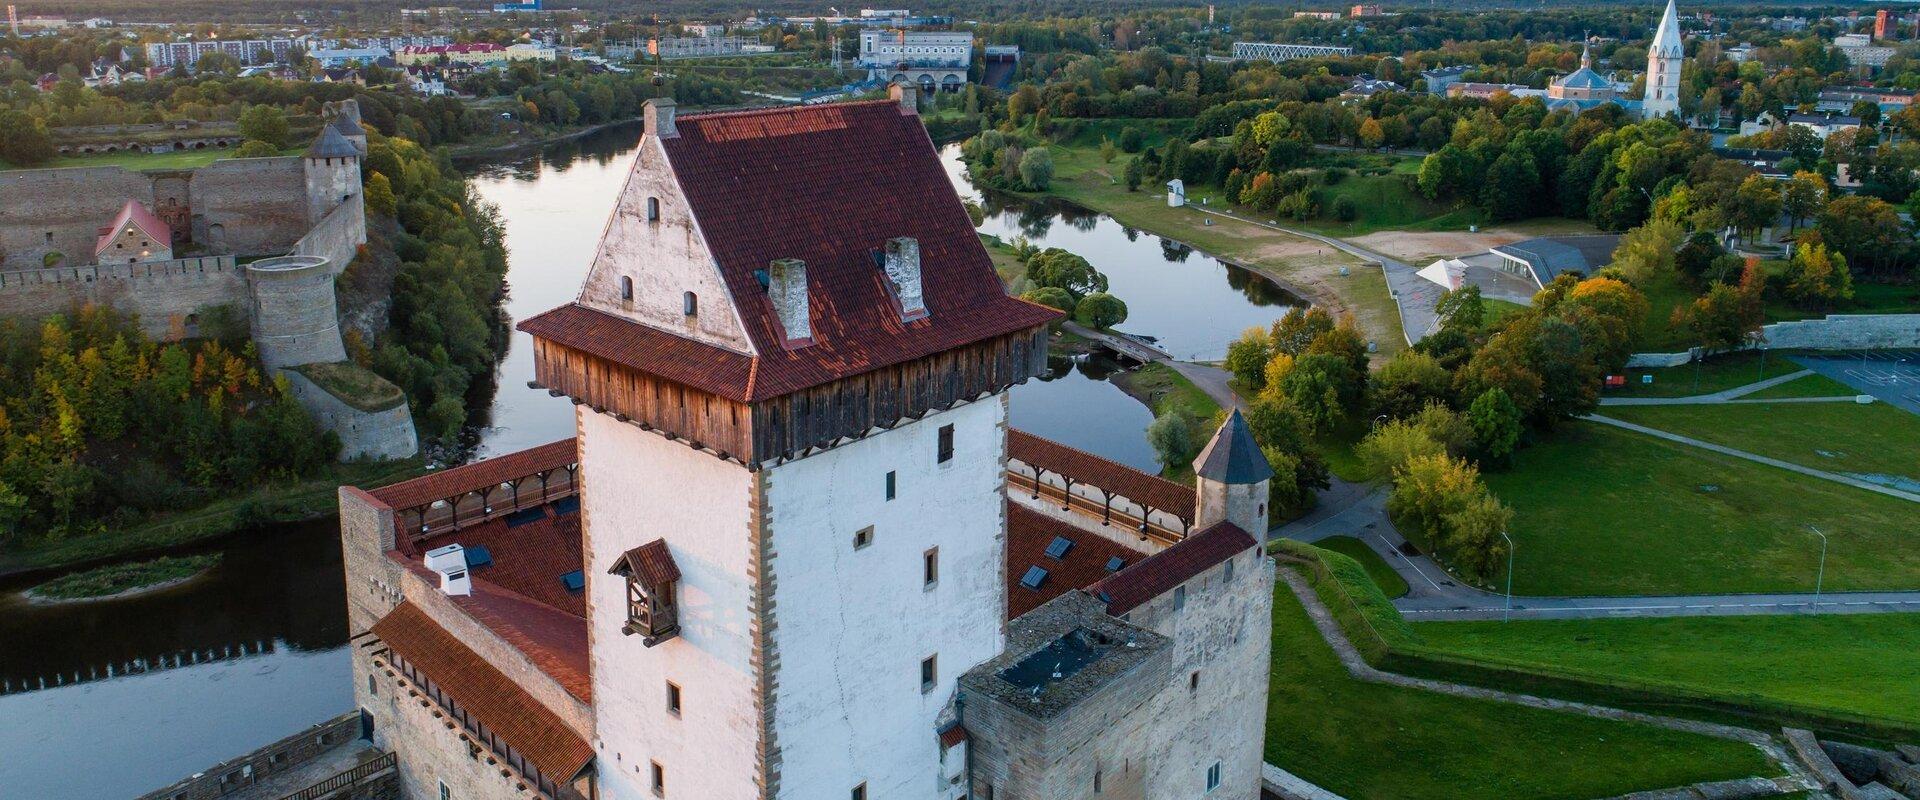 Narva Muuseum